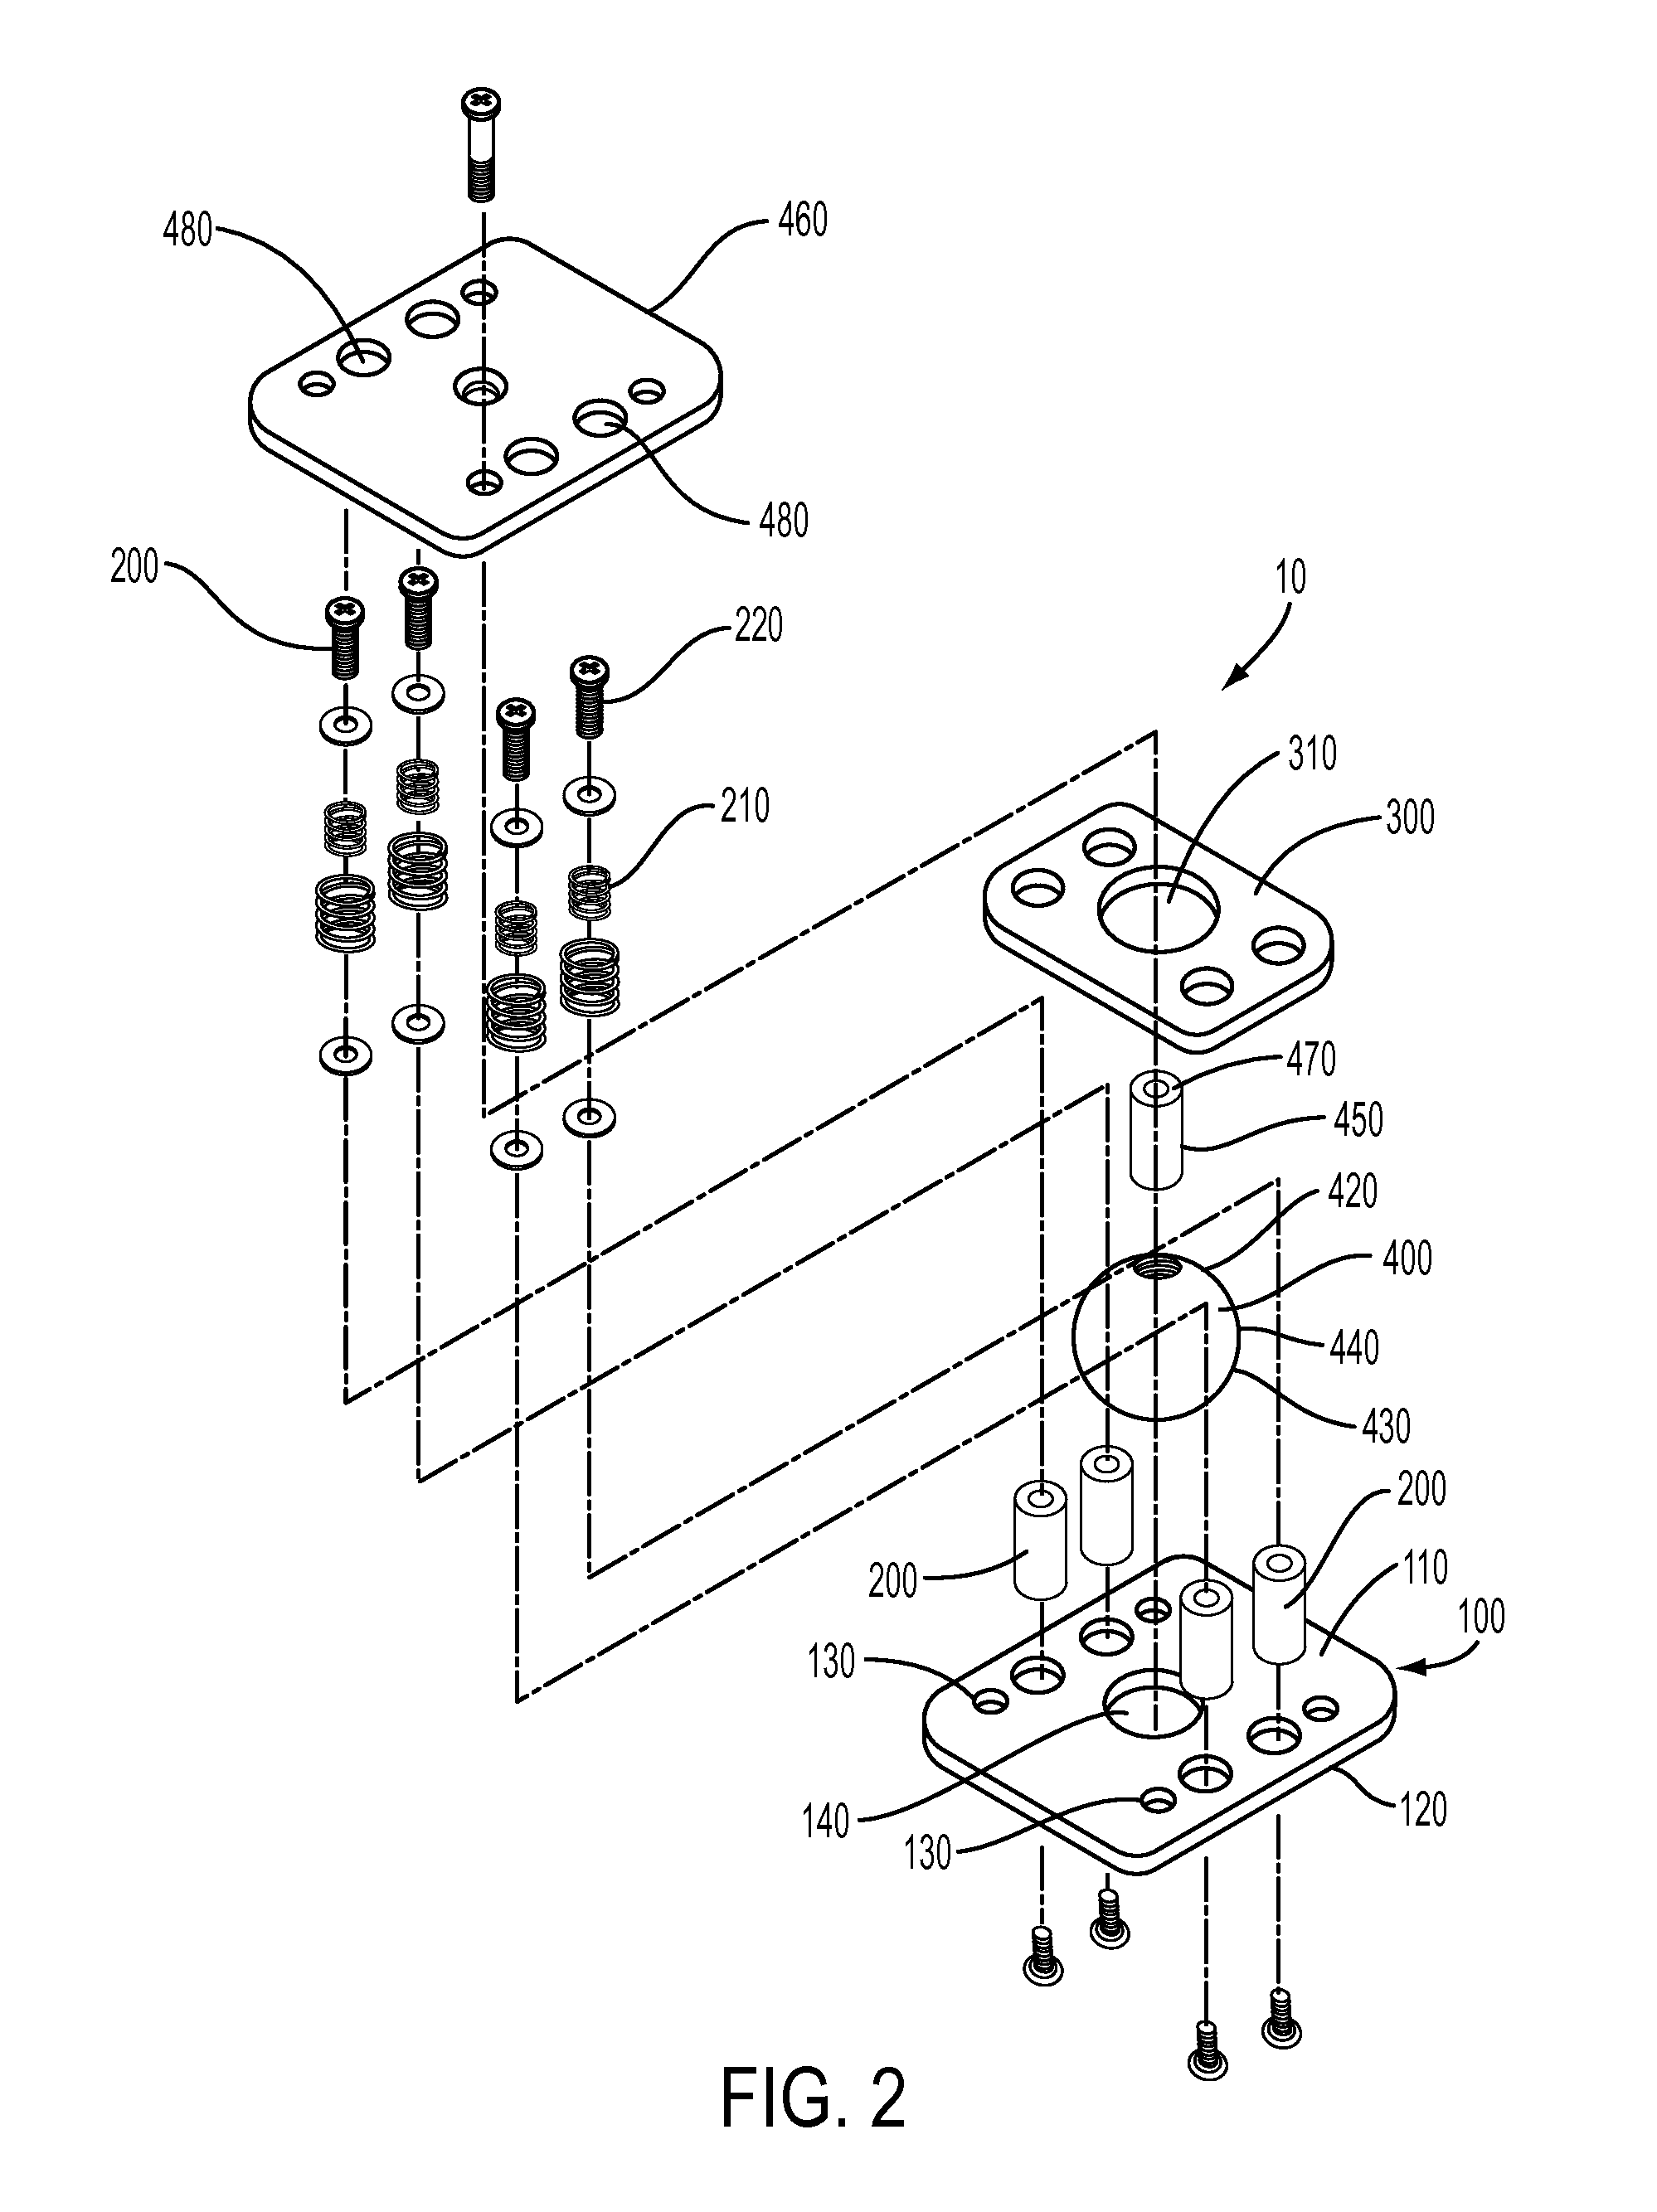 Electronic display mount